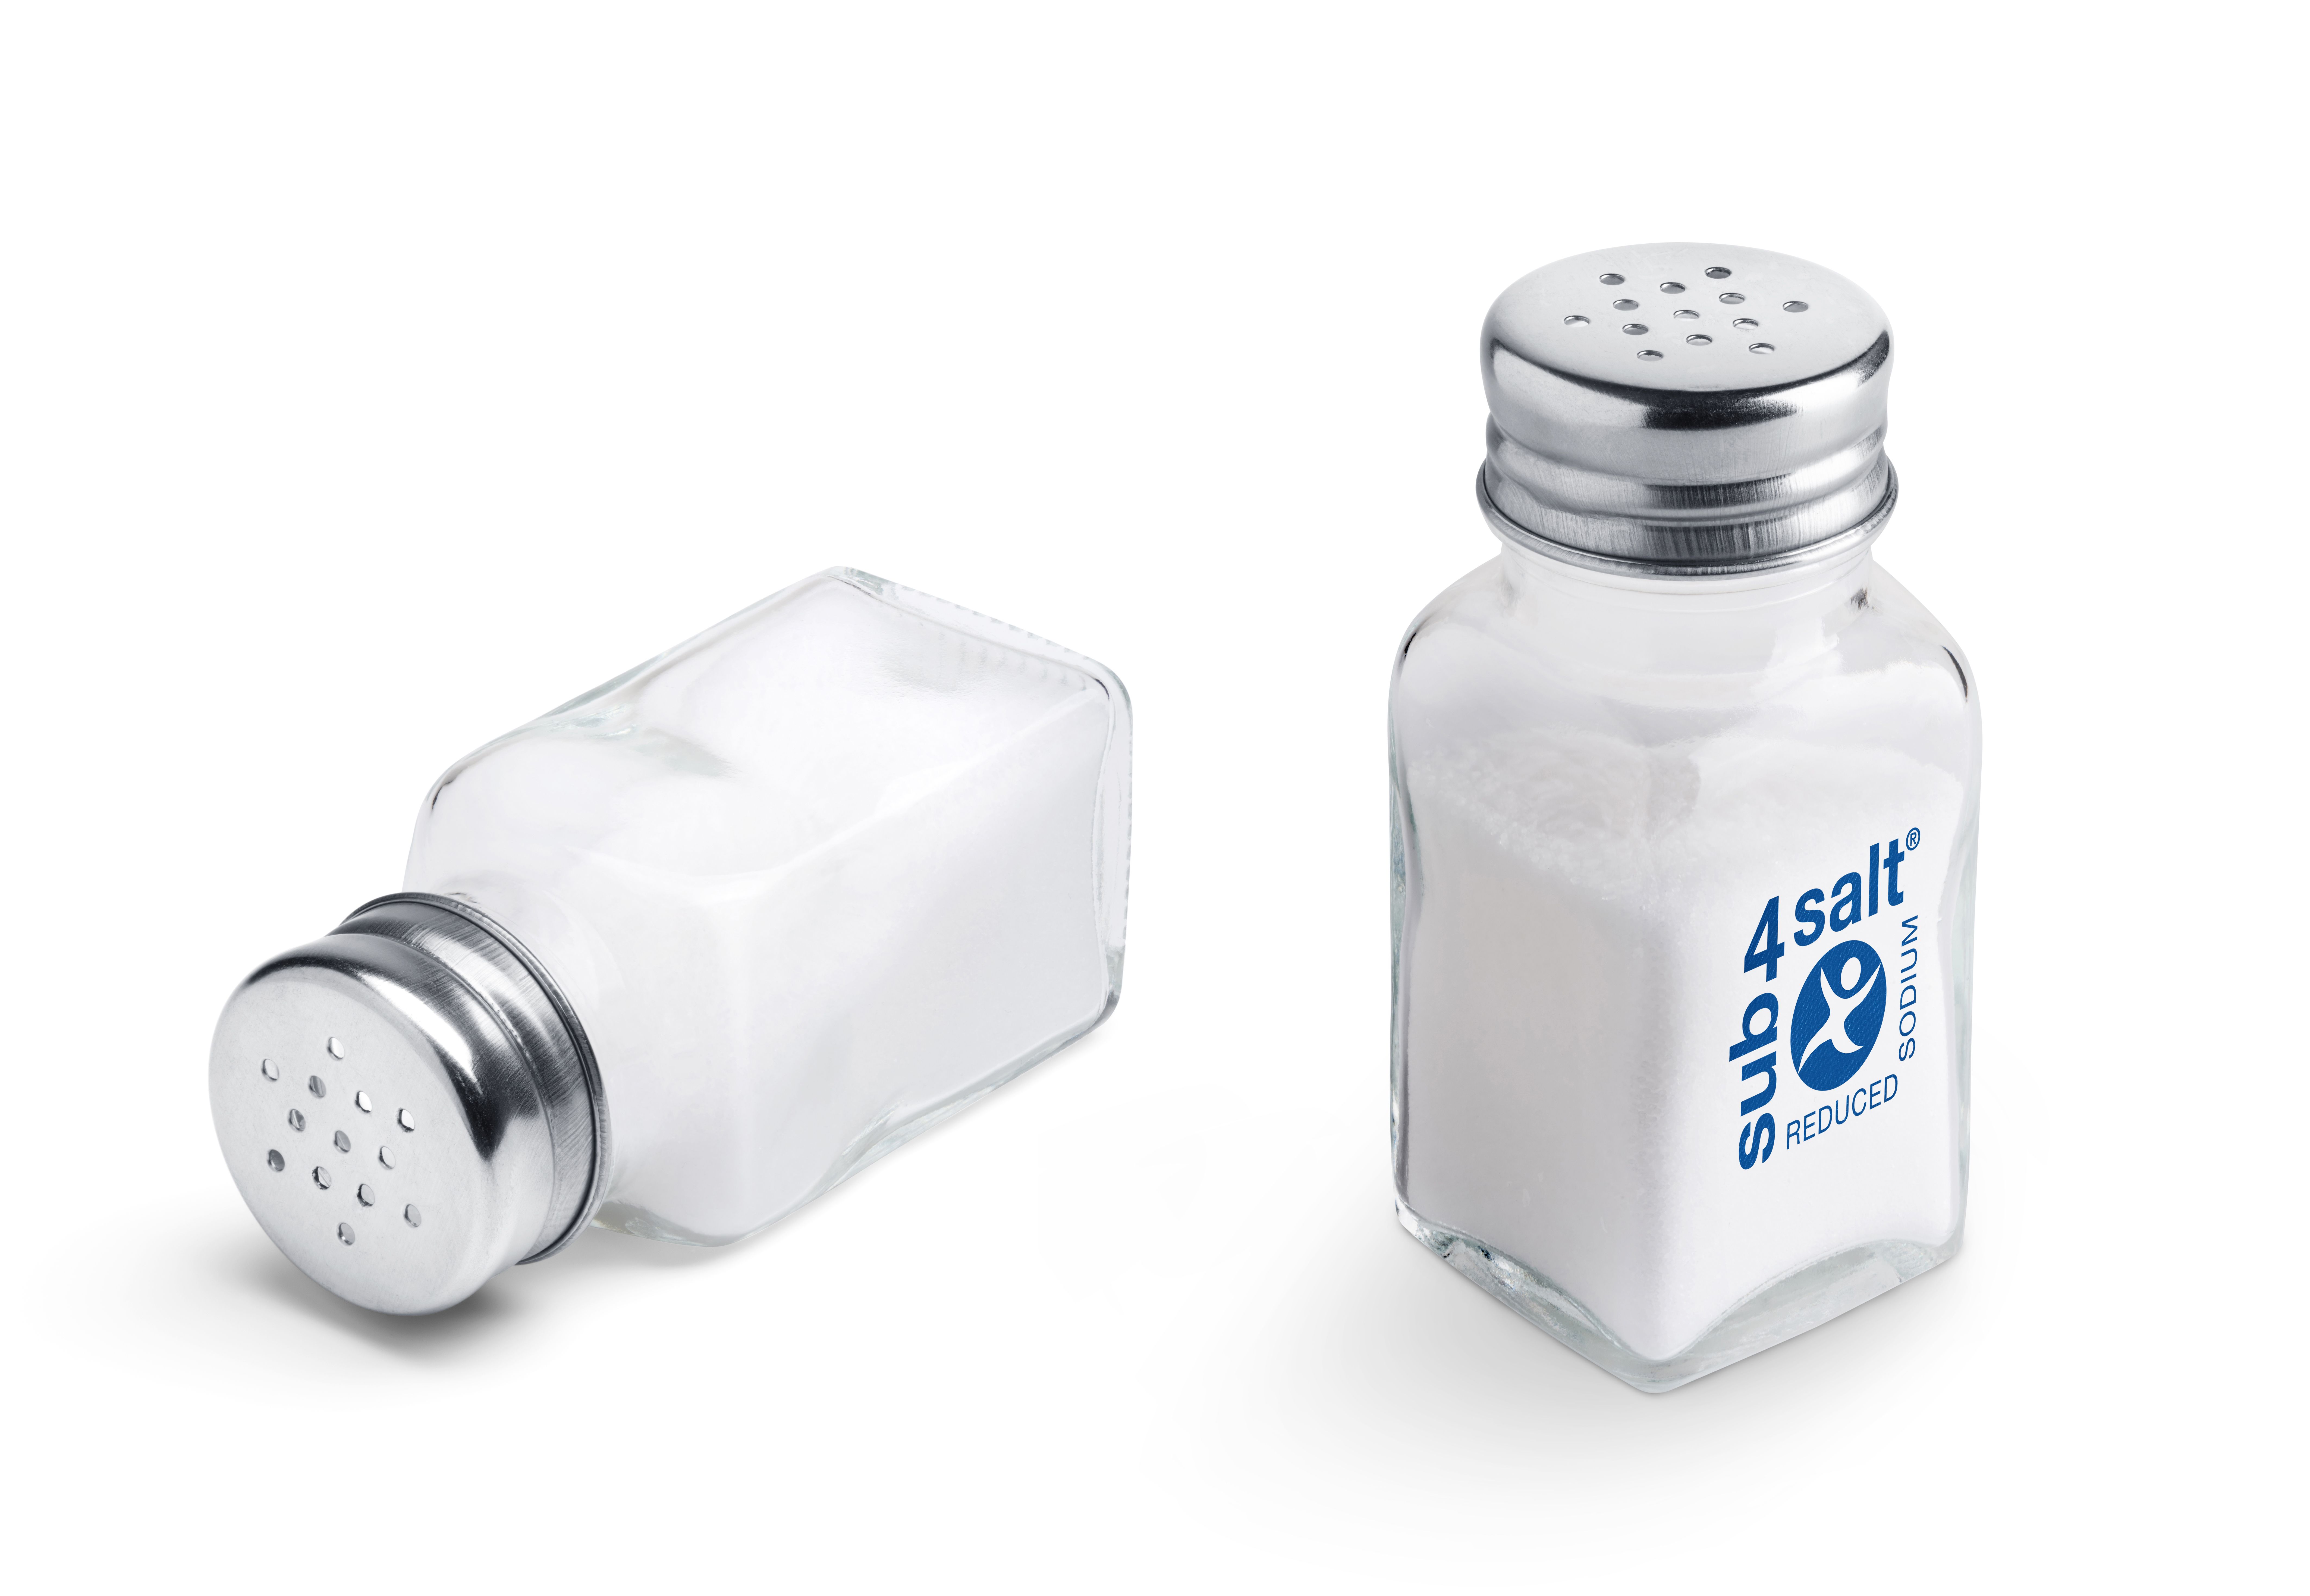 sub4salt® sea salt - Salt Replacement